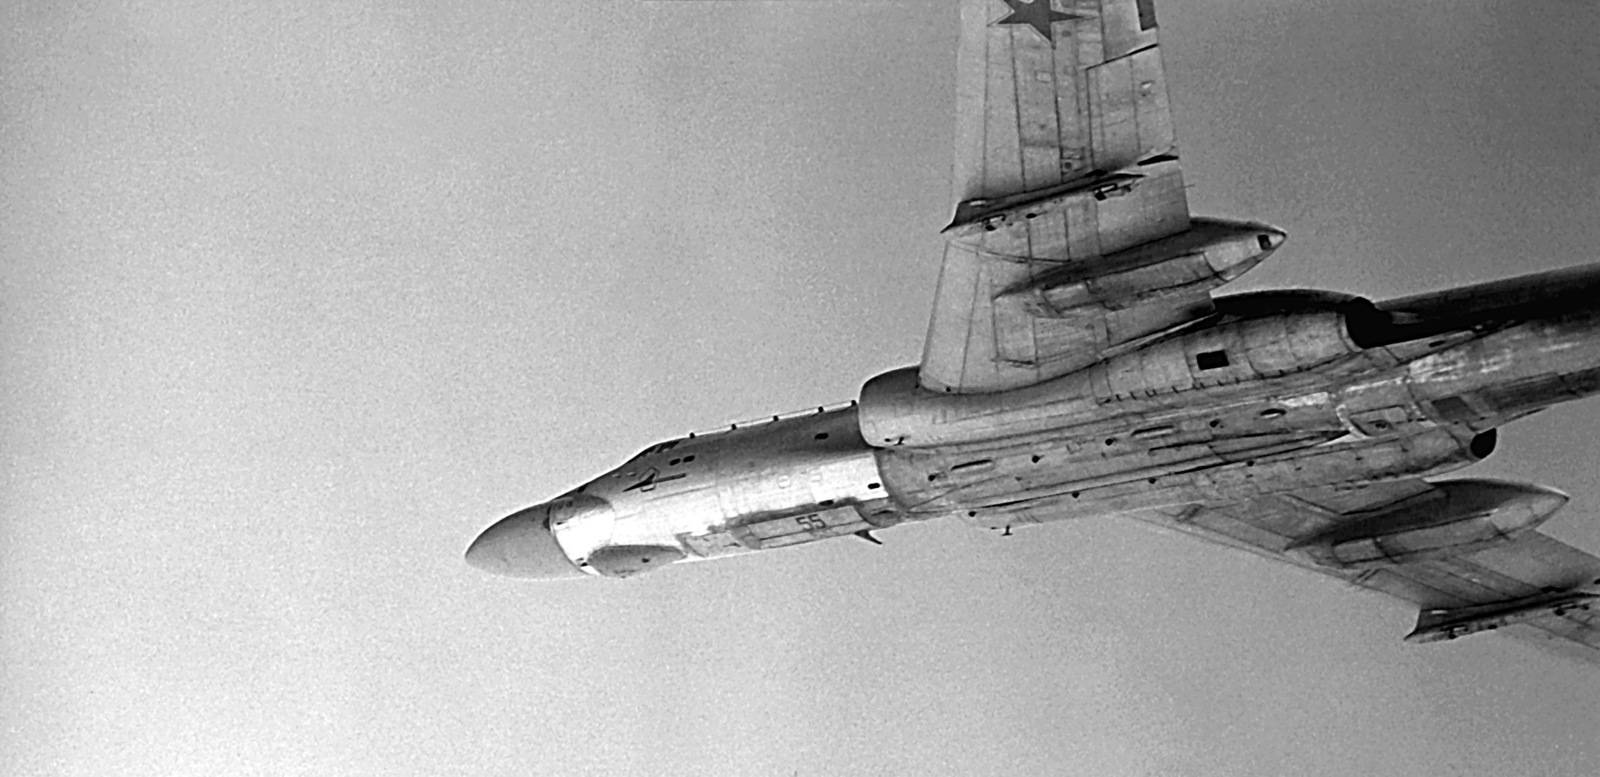 Обзор самолета белый лебедь (ту-160): технические характеристики и возможности